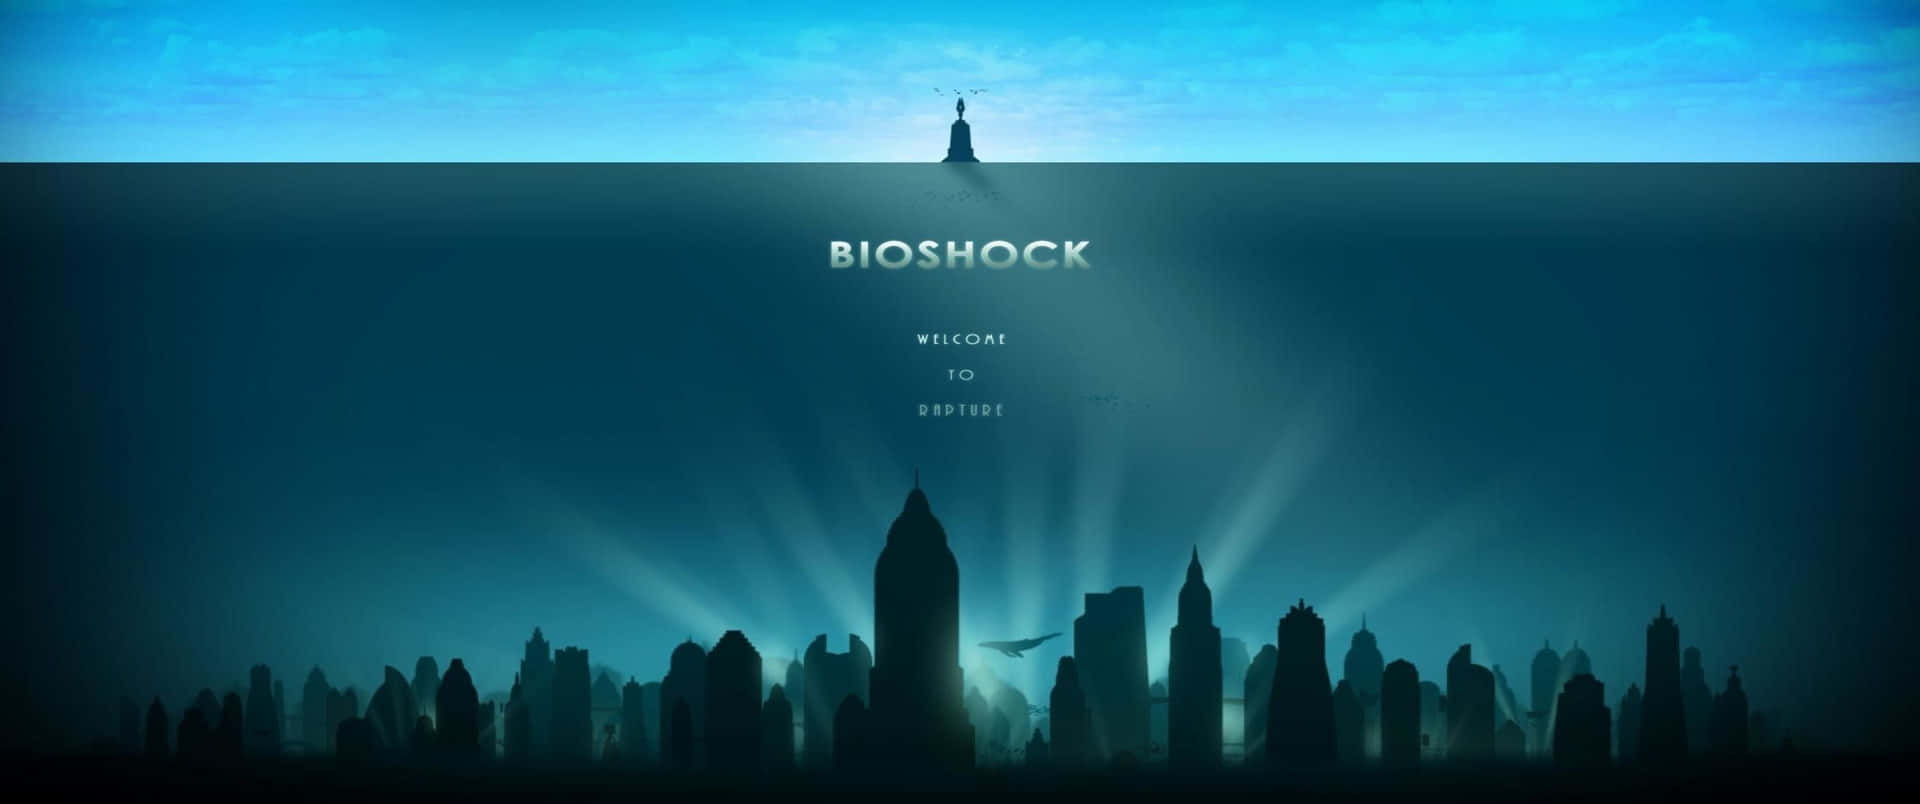 Förälskelse3440x1440p Bioshock Infinite Bakgrundsbild.